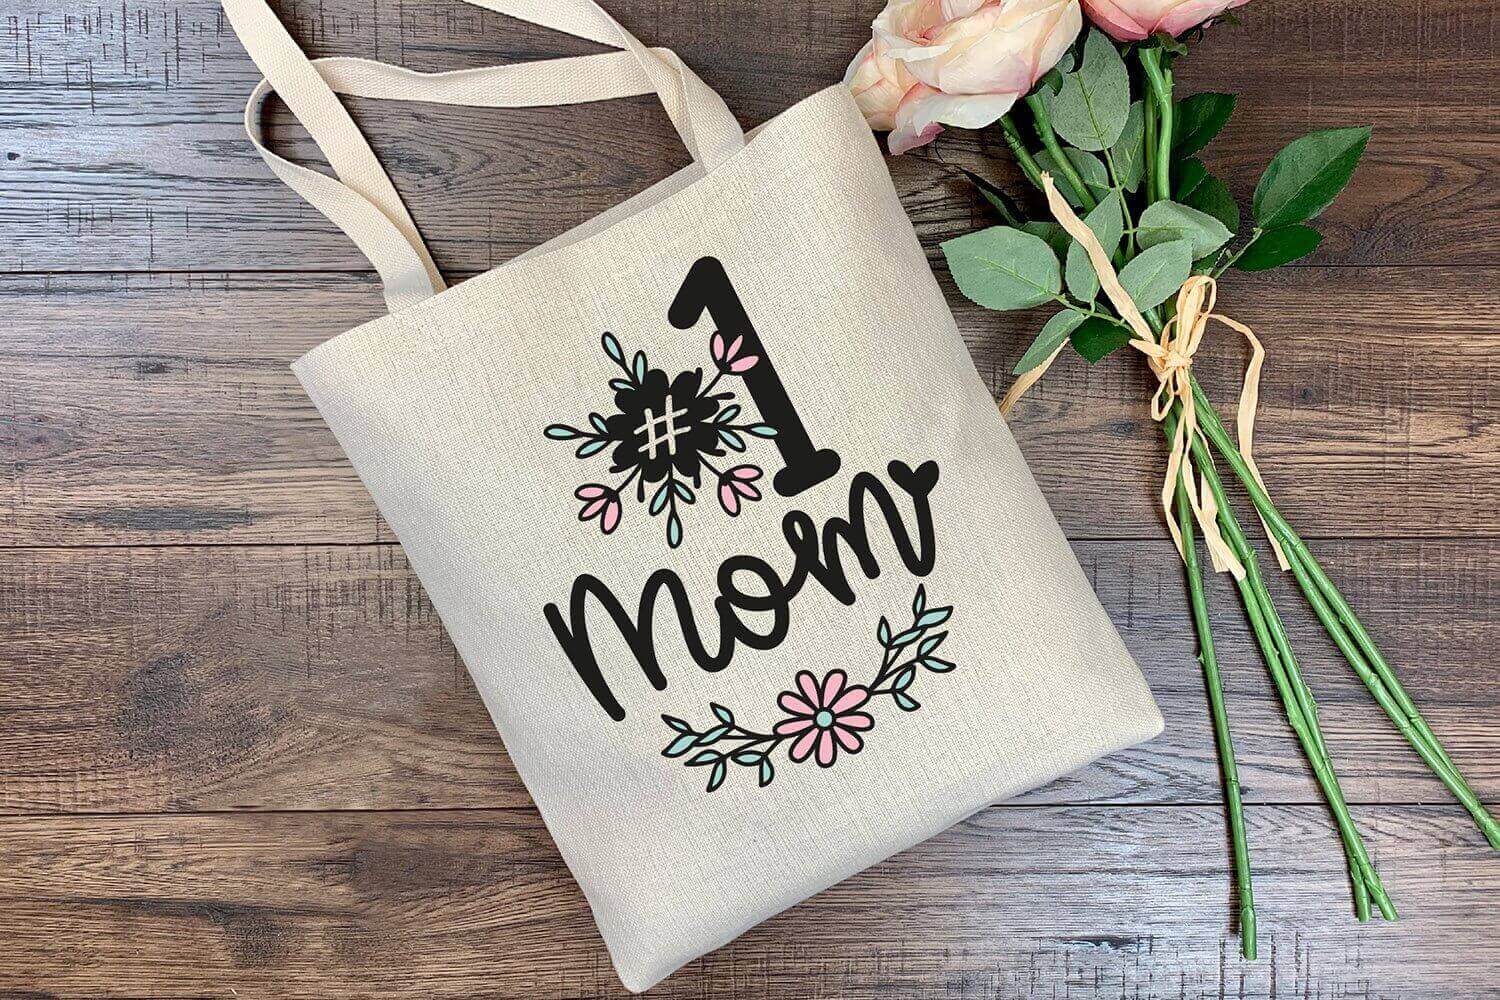 Bag with inscription #1 Mom.